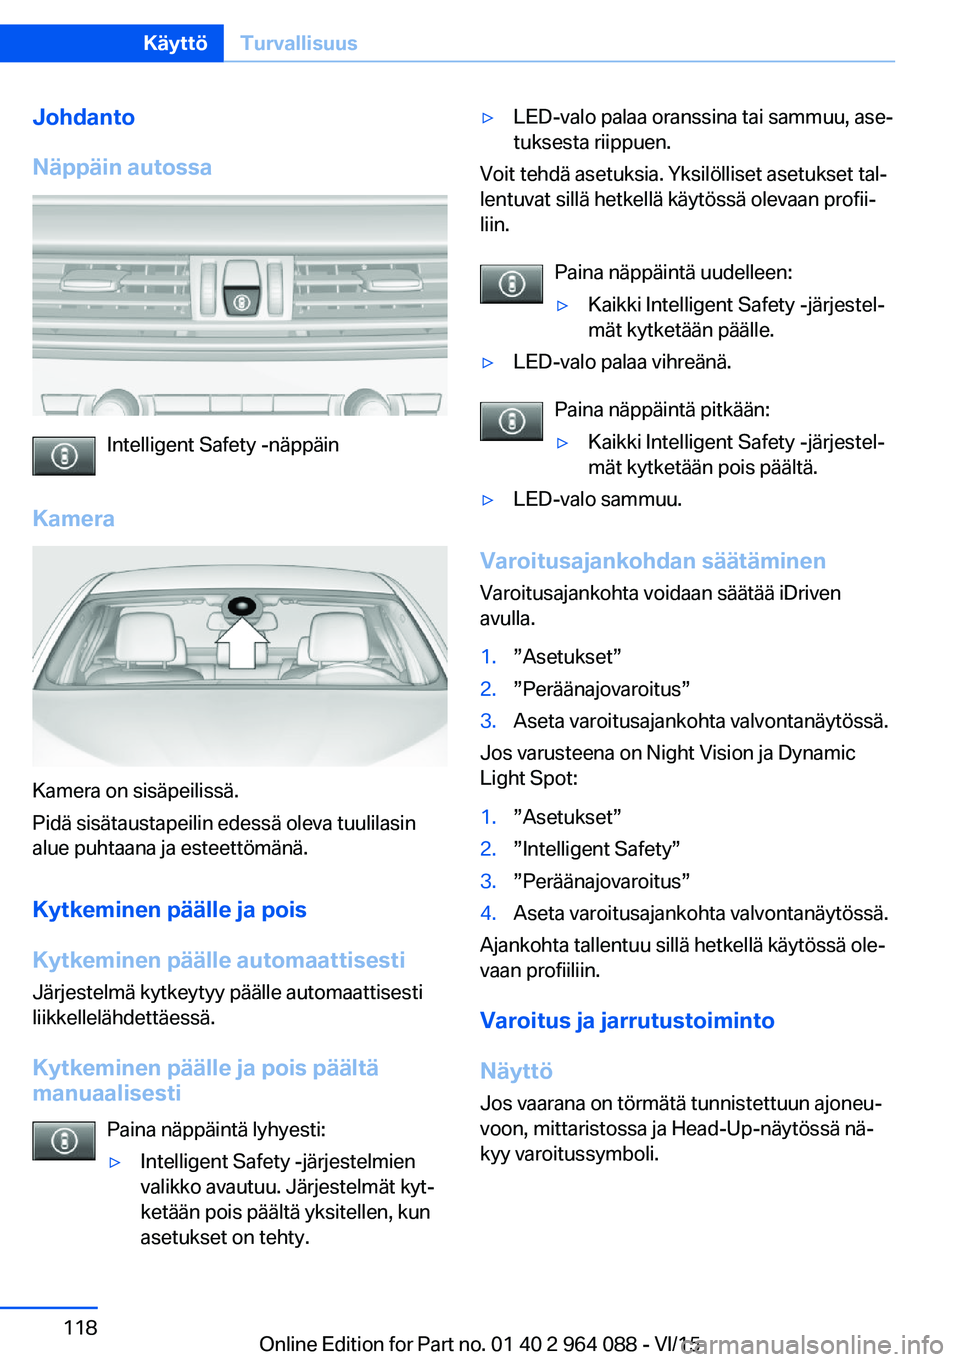 BMW X5 M 2016  Omistajan Käsikirja (in Finnish) Johdanto
Näppäin autossa
Intelligent Safety -näppäin
Kamera
Kamera on sisäpeilissä.
Pidä sisätaustapeilin edessä oleva tuulilasin
alue puhtaana ja esteettömänä.
Kytkeminen päälle ja pois